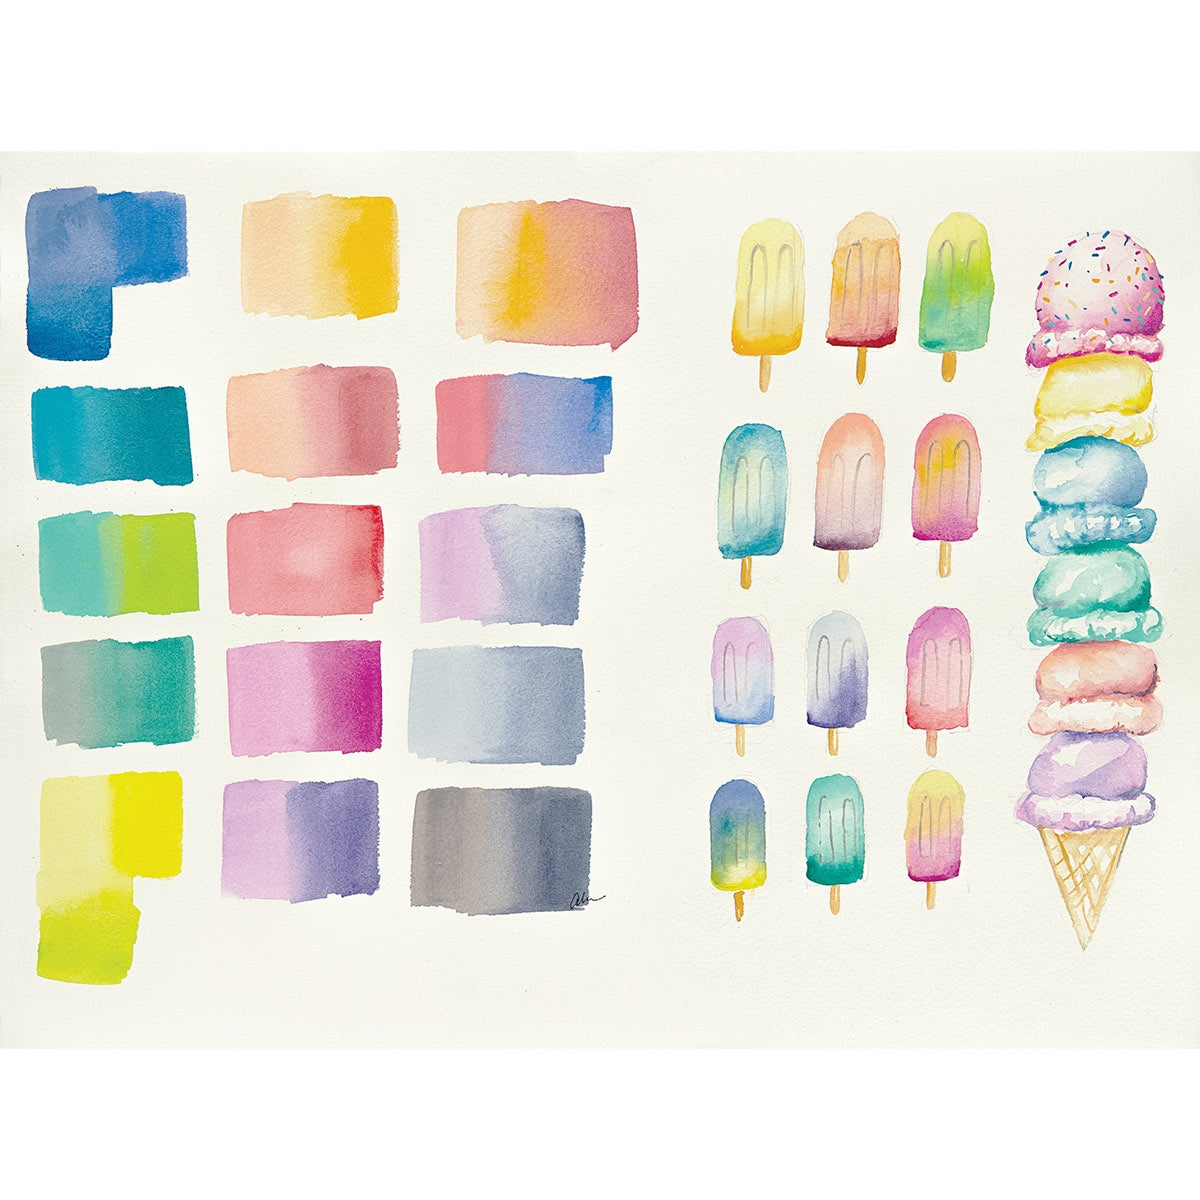 Derwent-Aquarelle Pastel Shades Paint Pan Set